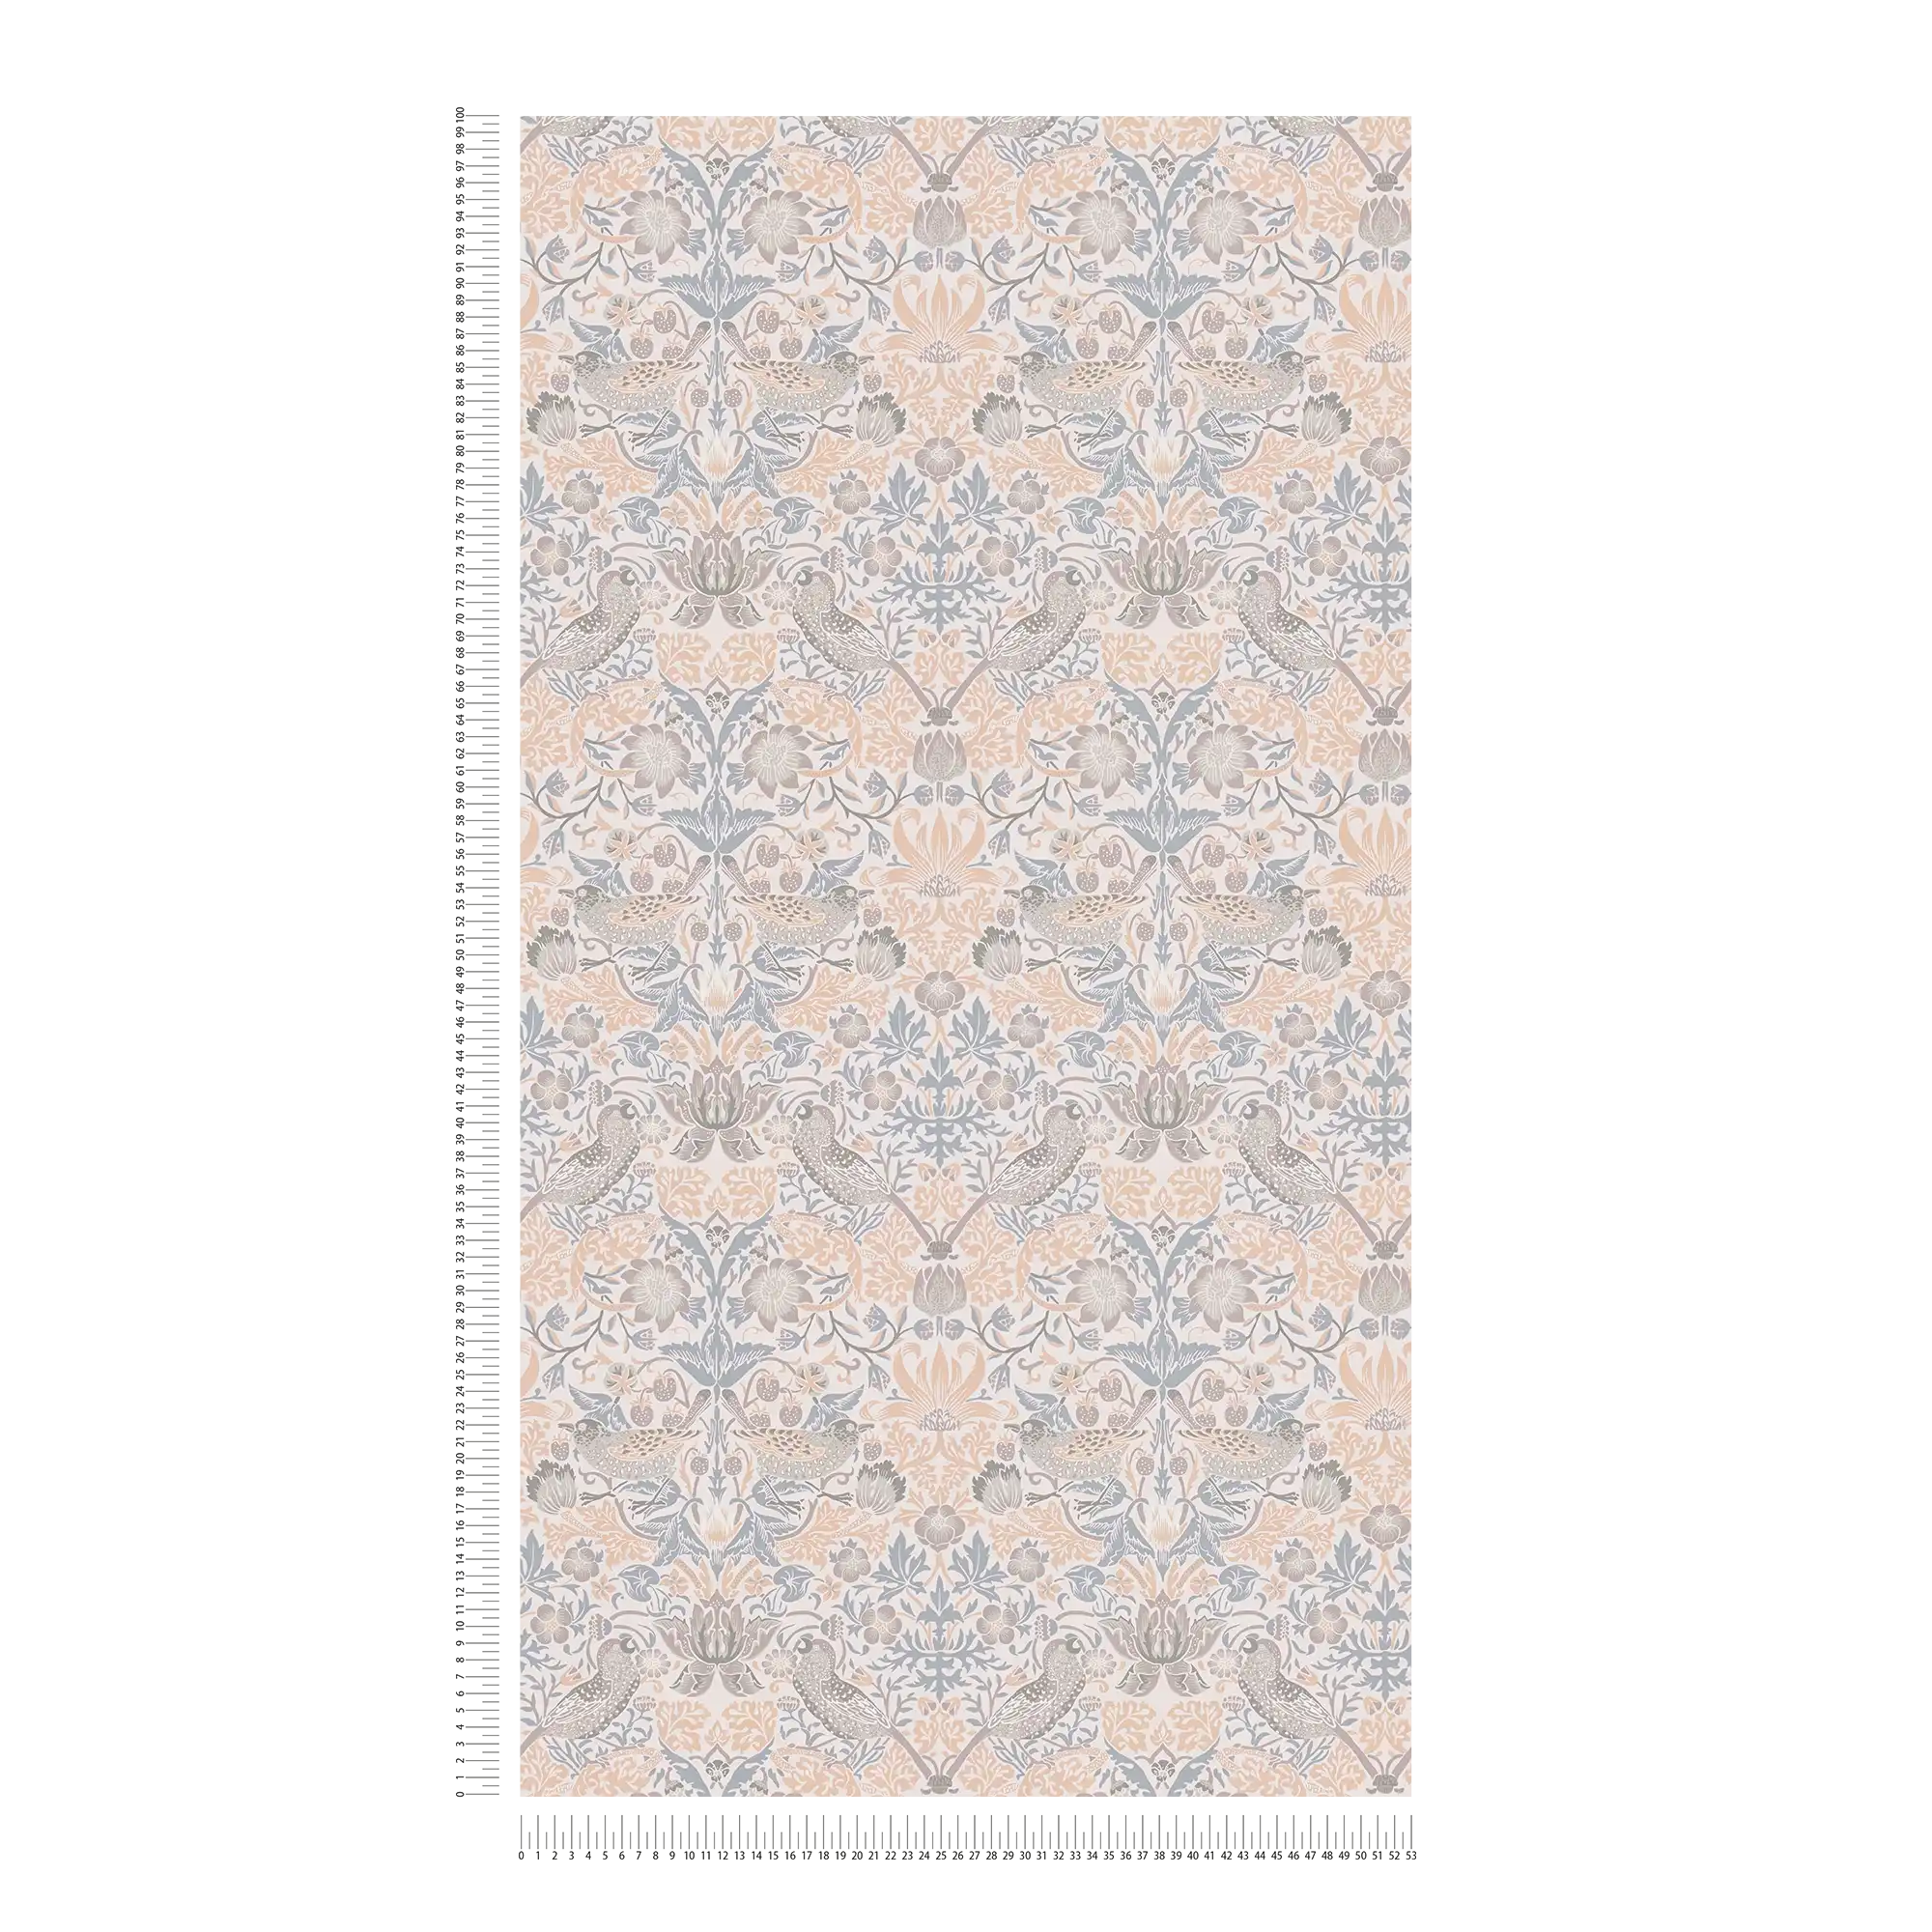             Vliestapete florales Muster mit Vögel – Beige, Grau, Weiß
        